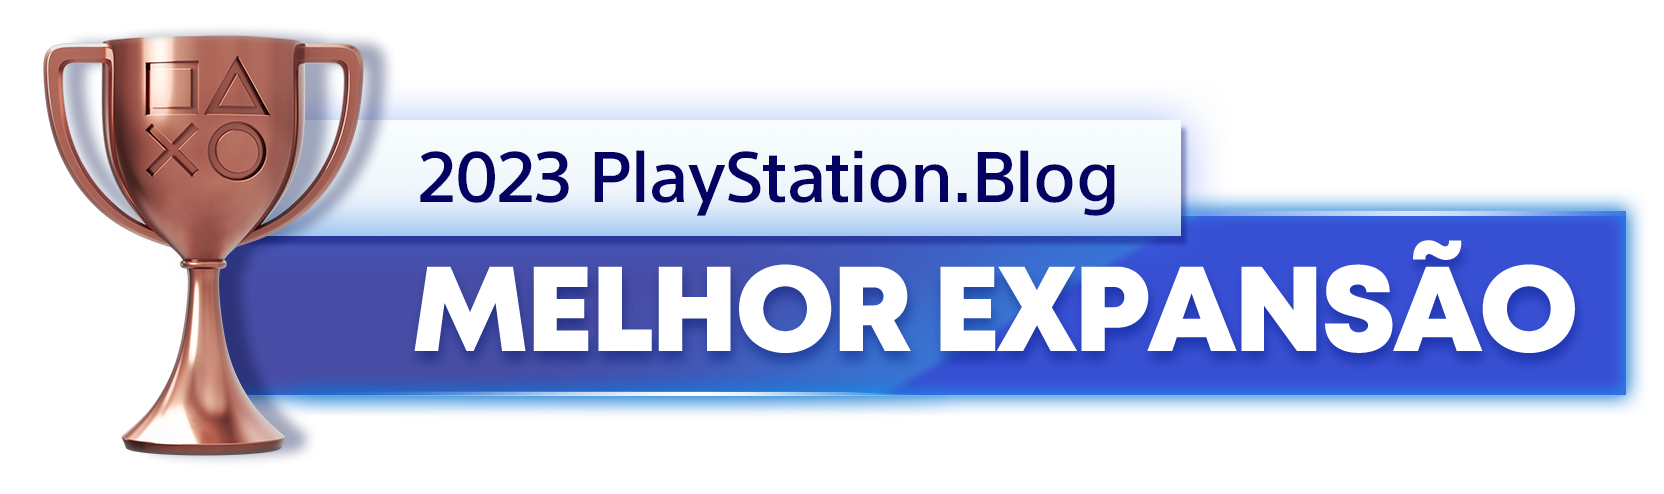  "Troféu de Bronze para o vencedor da categoria Melhor Expansão de 2023 do PlayStation Blog"